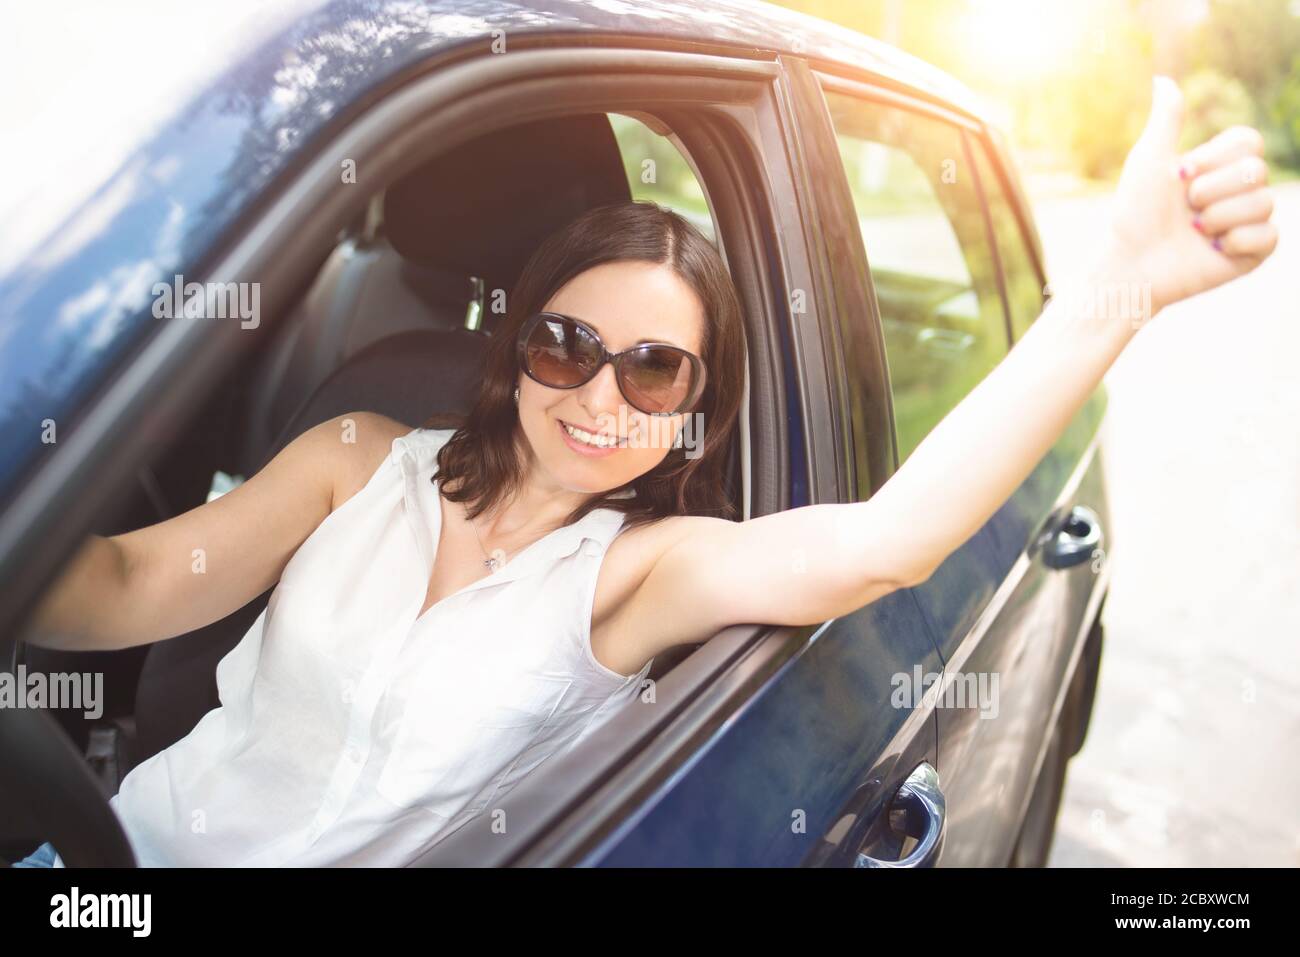 Eine elegant aussehende Frau mittleren Alters mit Sonnenbrille legte ihre Hand aus dem Autofenster und hob ihre Daumen nach oben. Stockfoto